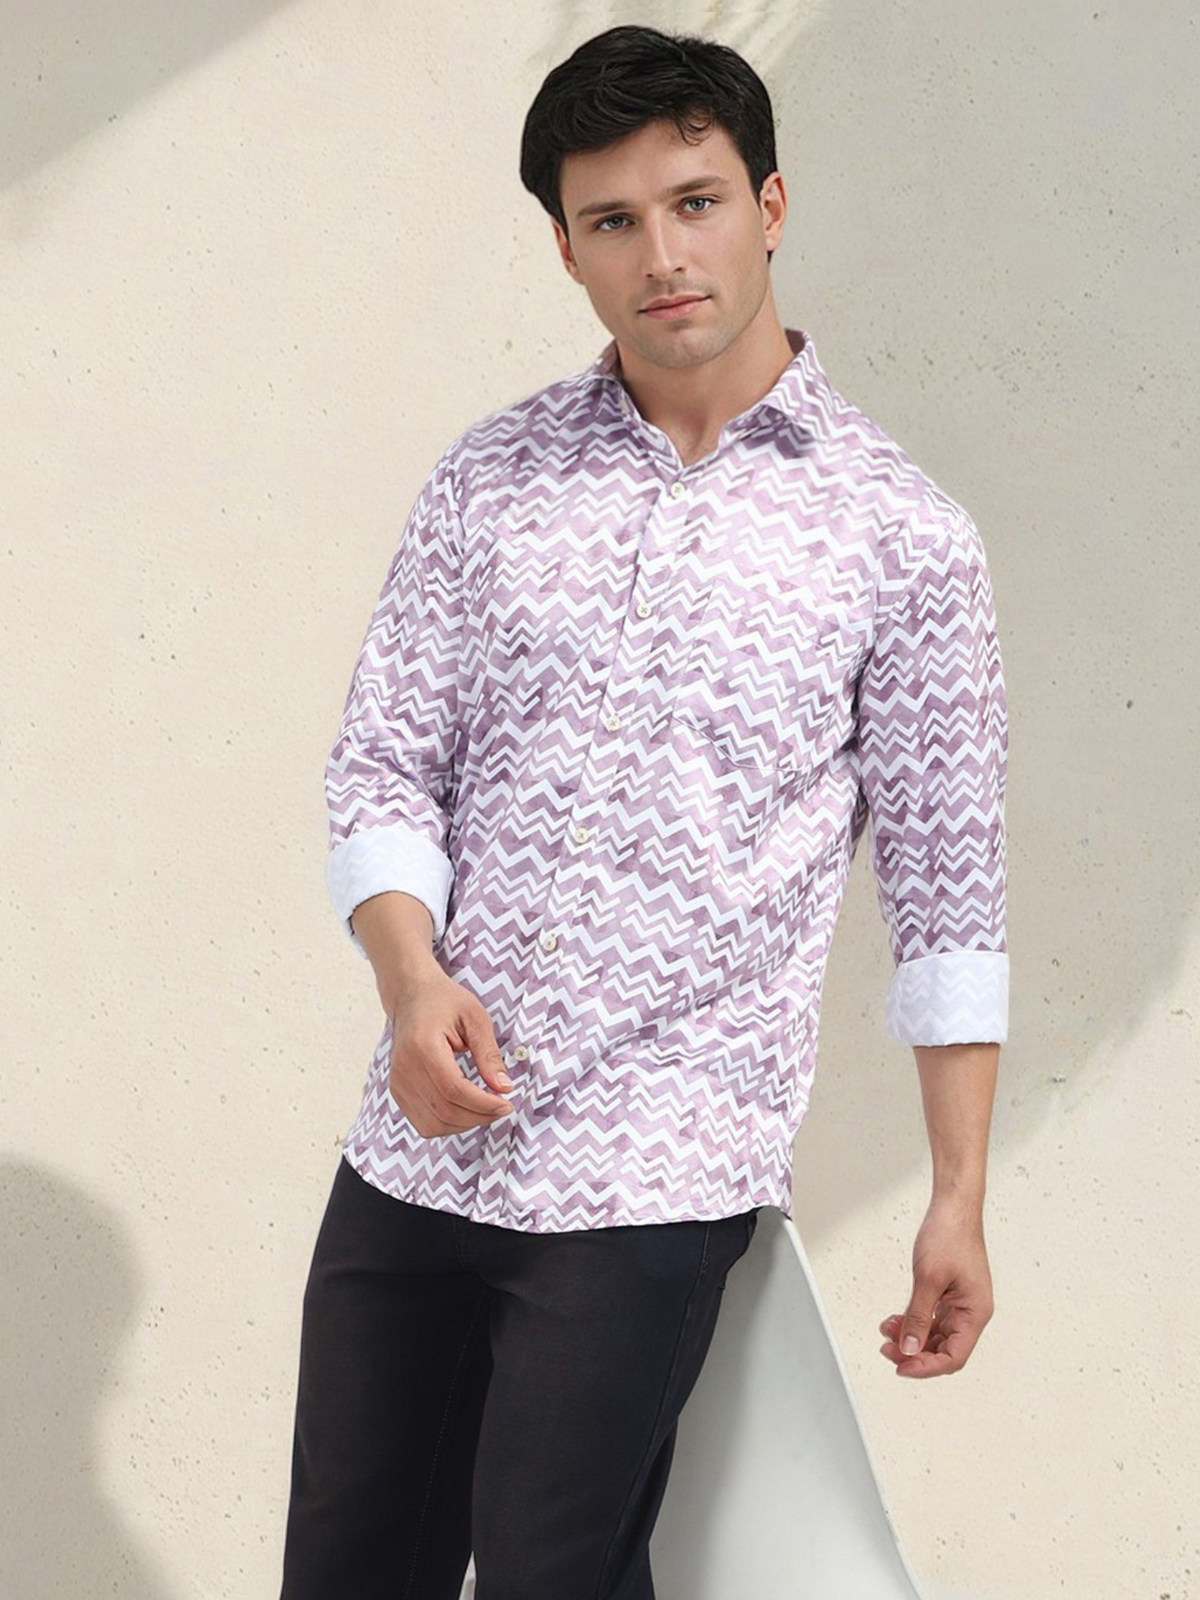 Men's Poly Satin Lycra Mauve Digital Printed Shirt